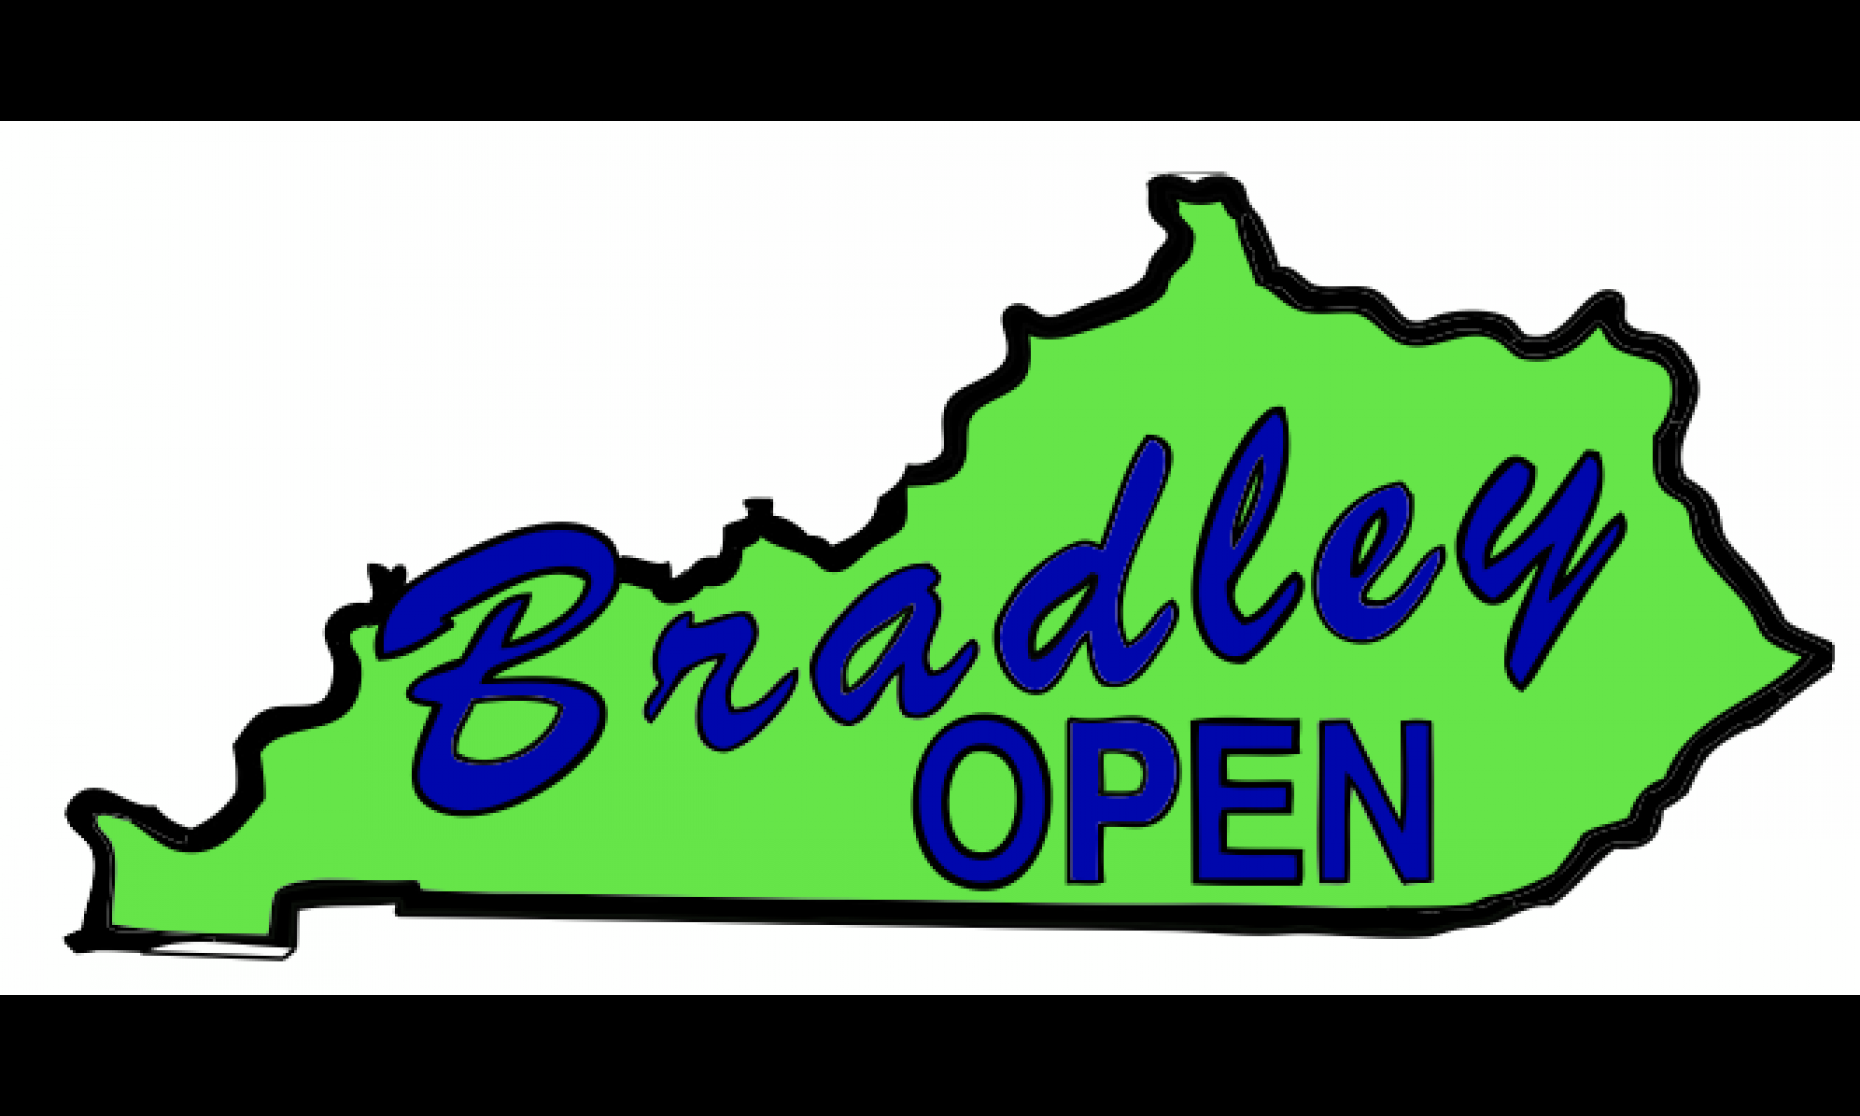 Bradley Open